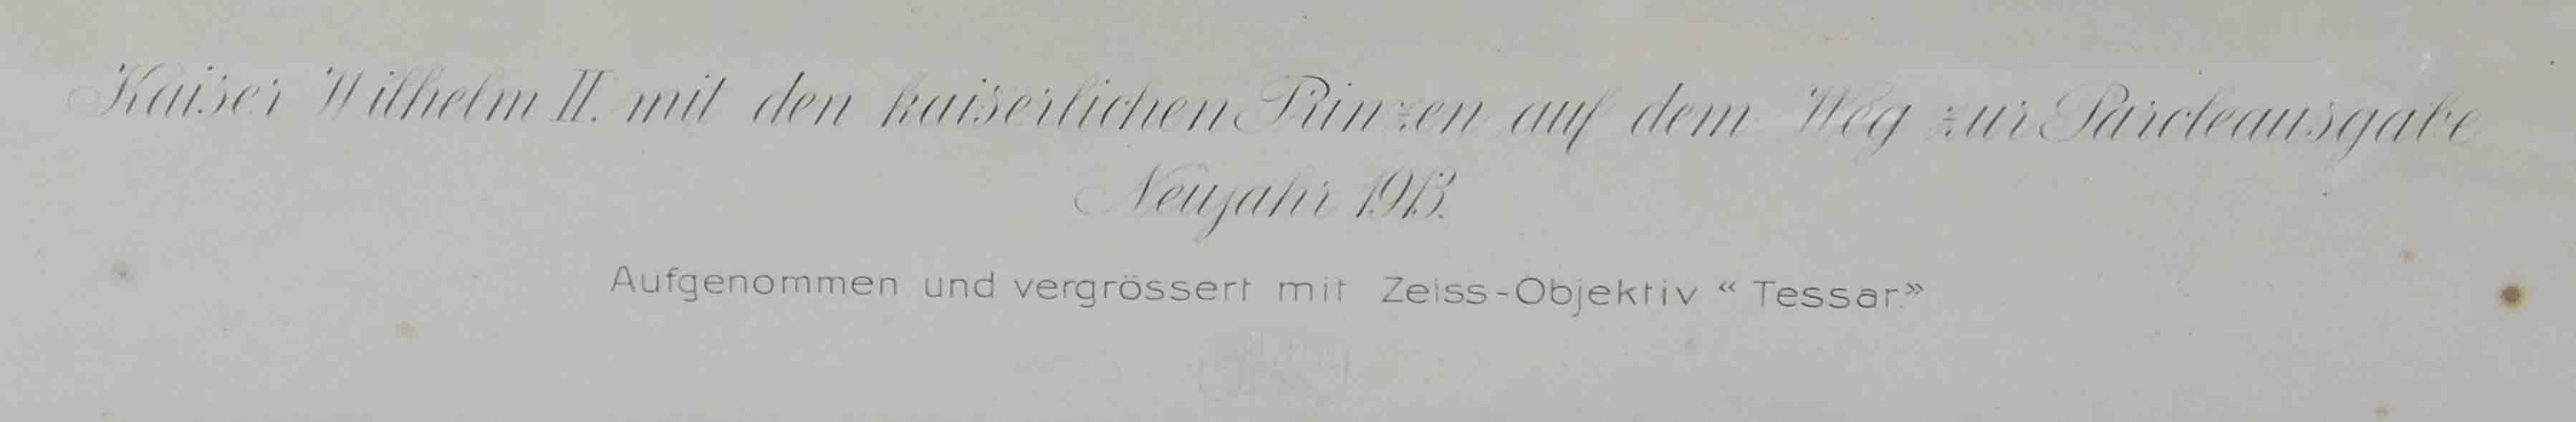 Foto / Druck. Kaiser Wilhelm II von 1913. - Bild 8 aus 15